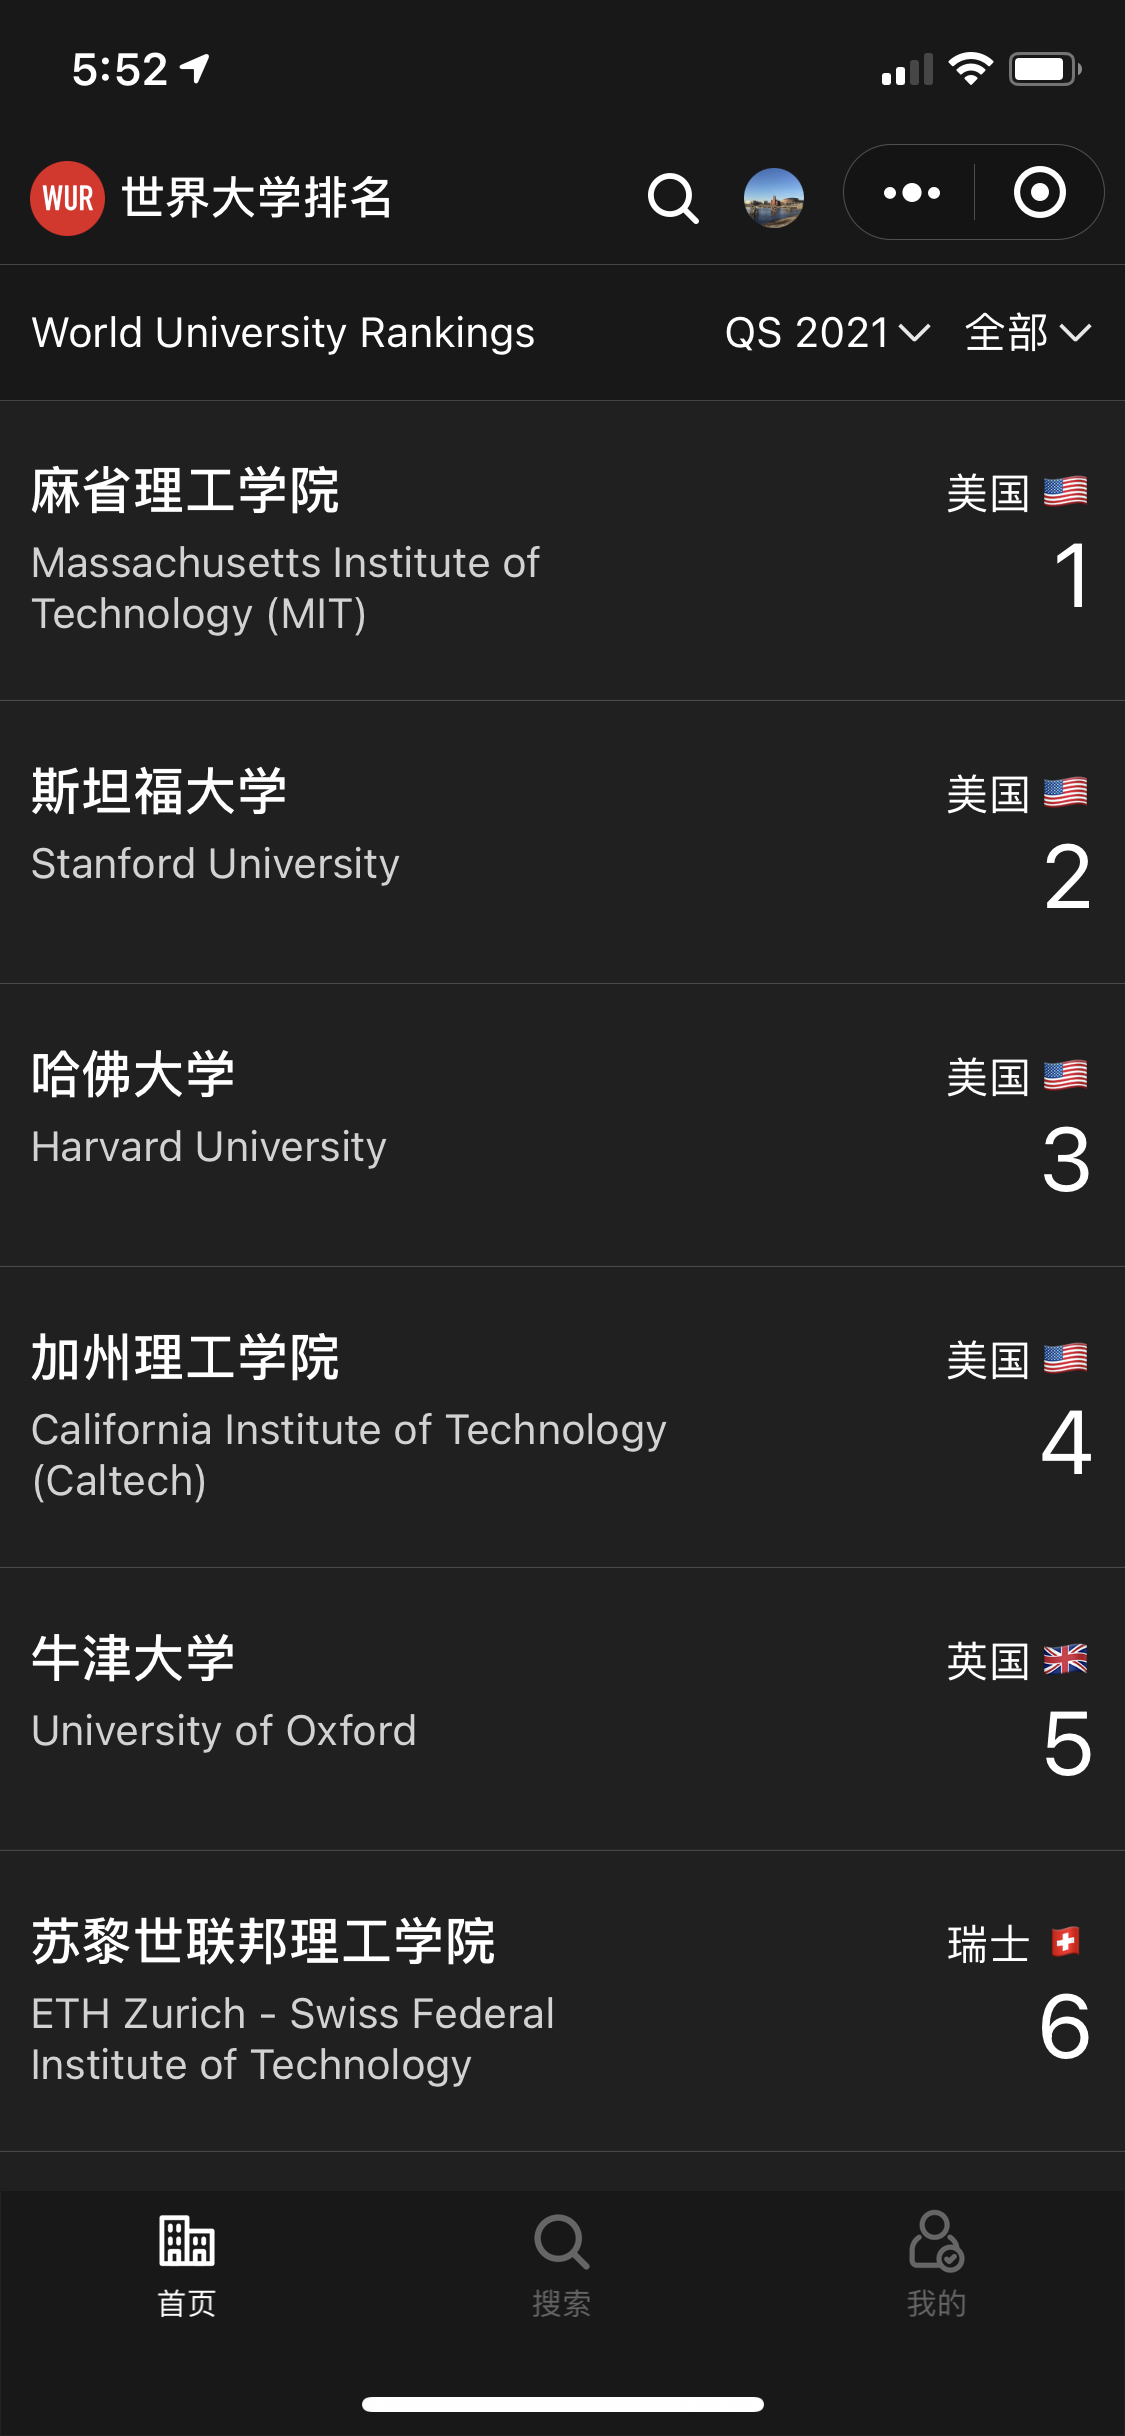 世界大学排名统计_世界大学排名统计小程序_世界大学排名统计微信小程序